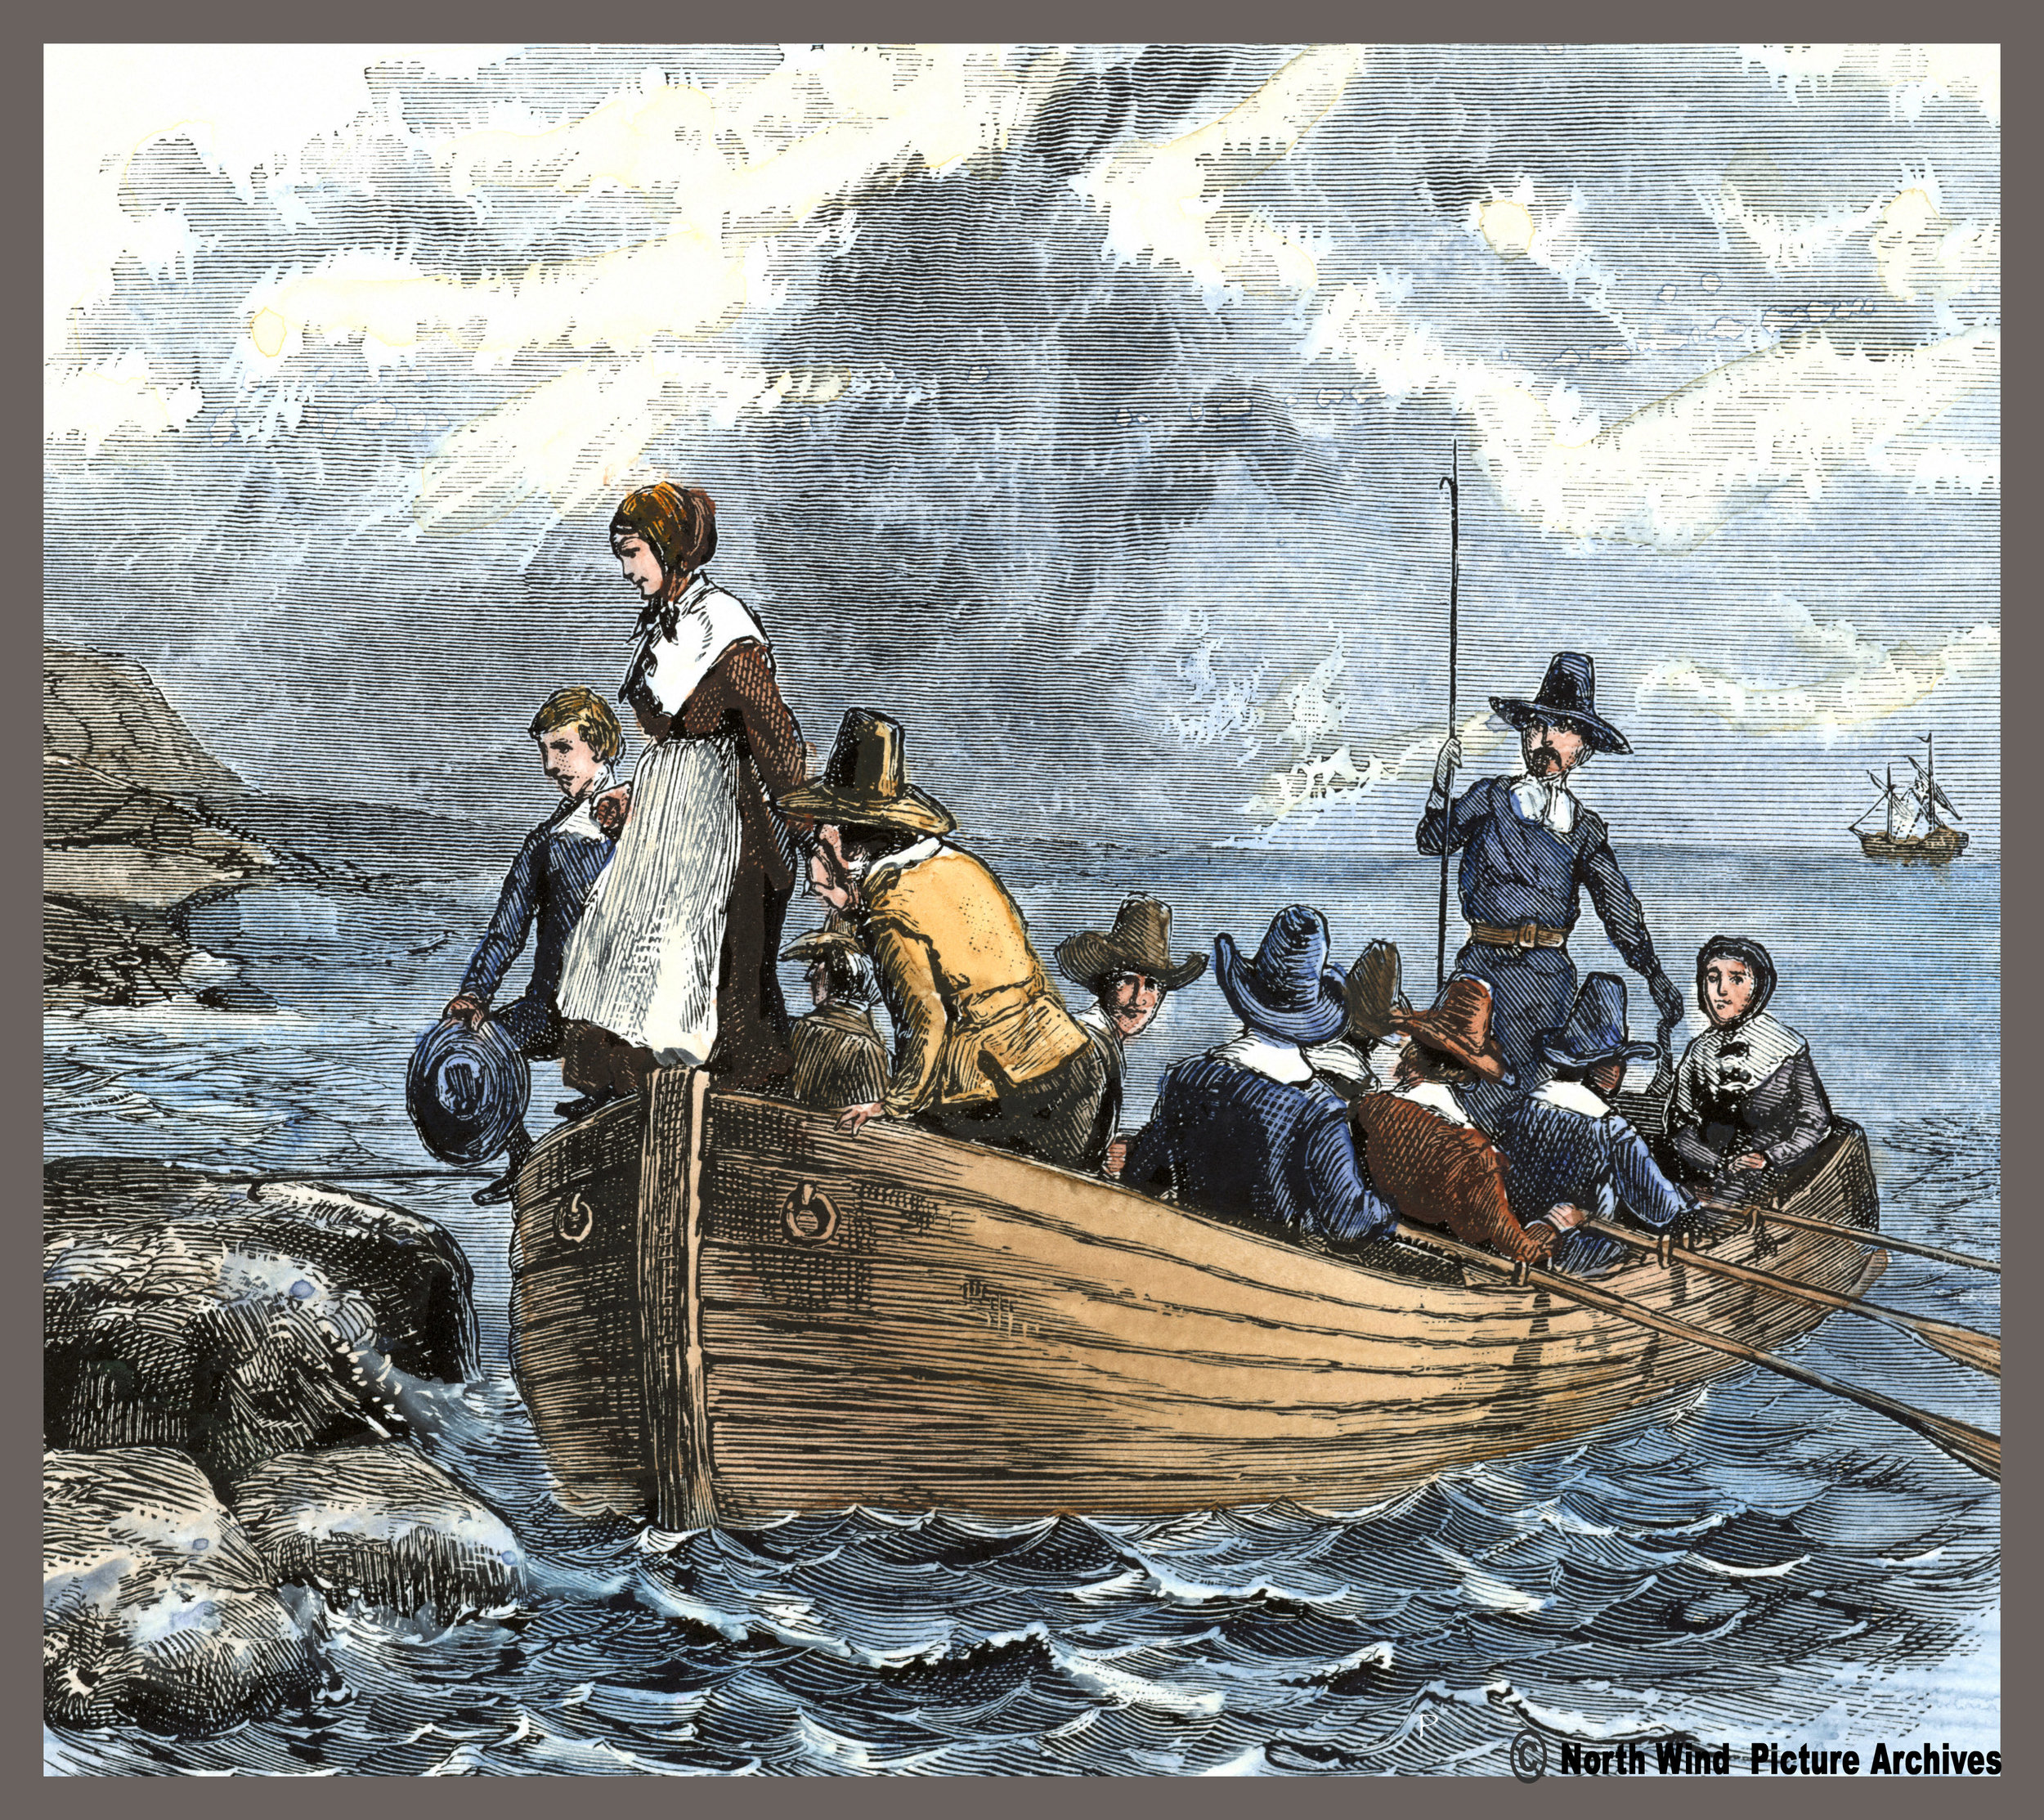 Arrived european. Корабль Мэйфлауэр 1620. Pilgrims (Пилигримы). Корабль Mayflower первые поселенцы в Америке. Первые поселенцы в Америке 1620.